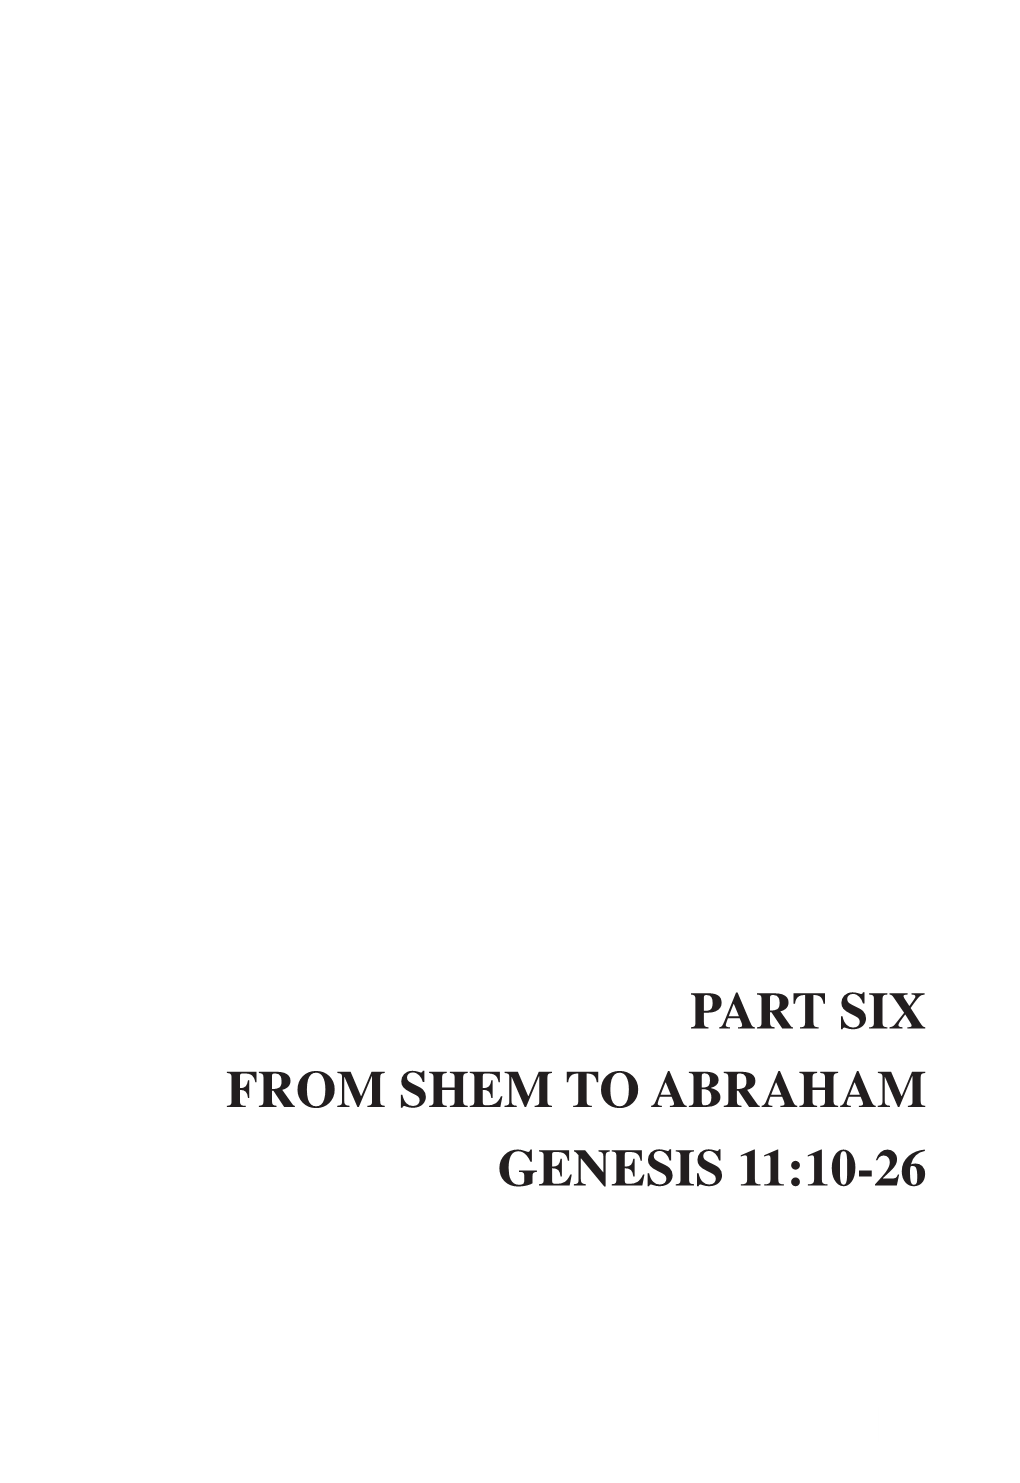 8. Genesis 11:10-26